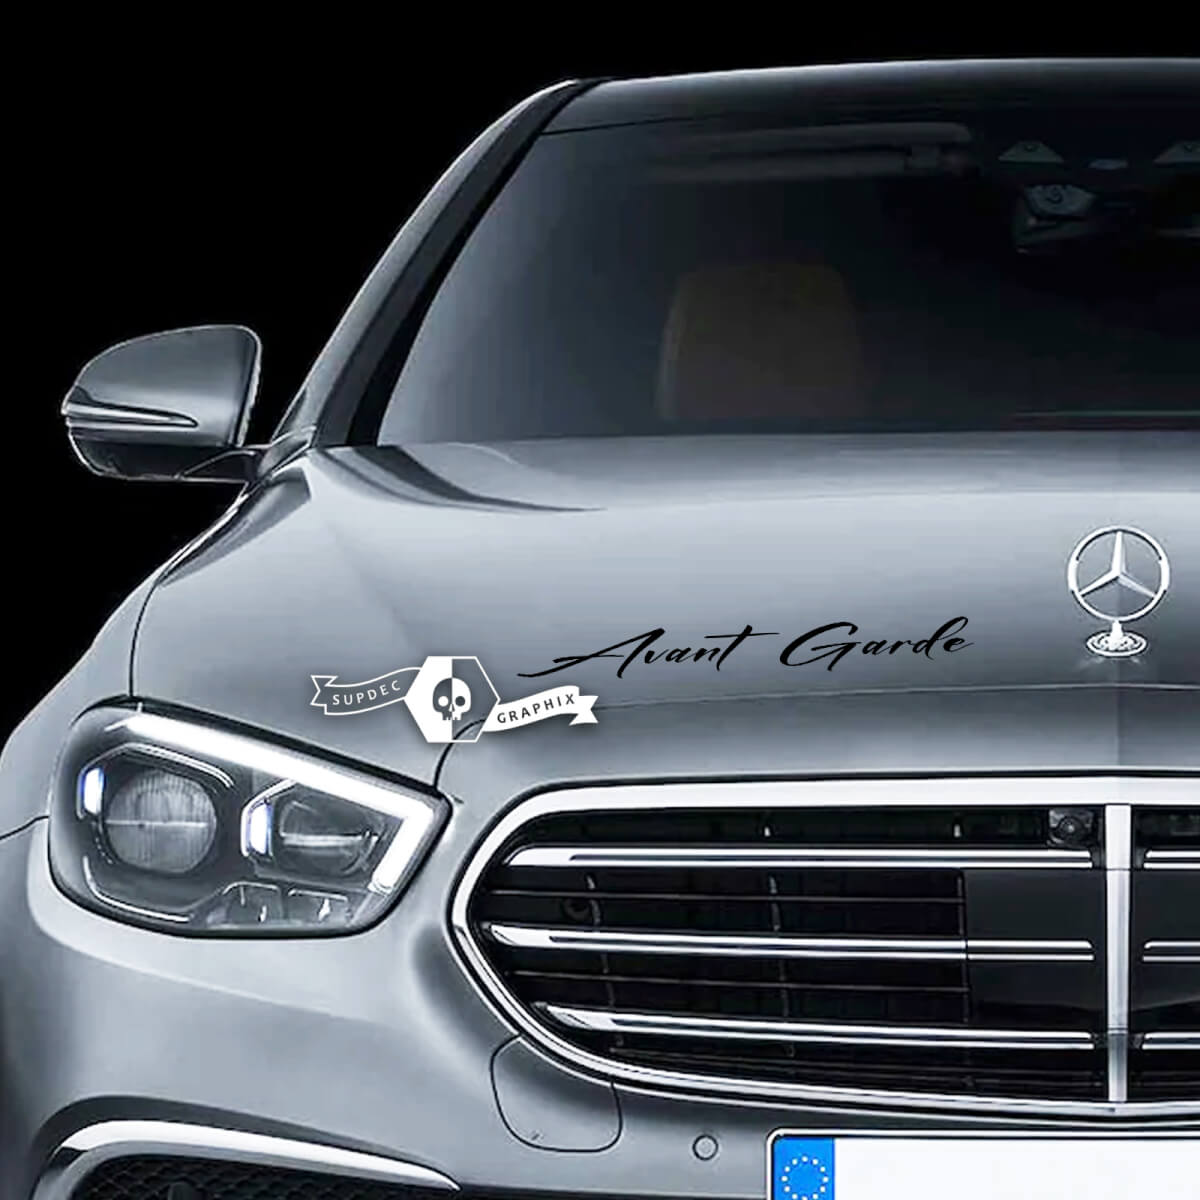 Adesivo per decalcomania con scritta sul cofano, emblema in vinile per Mercedes-Benz Avantgarde
